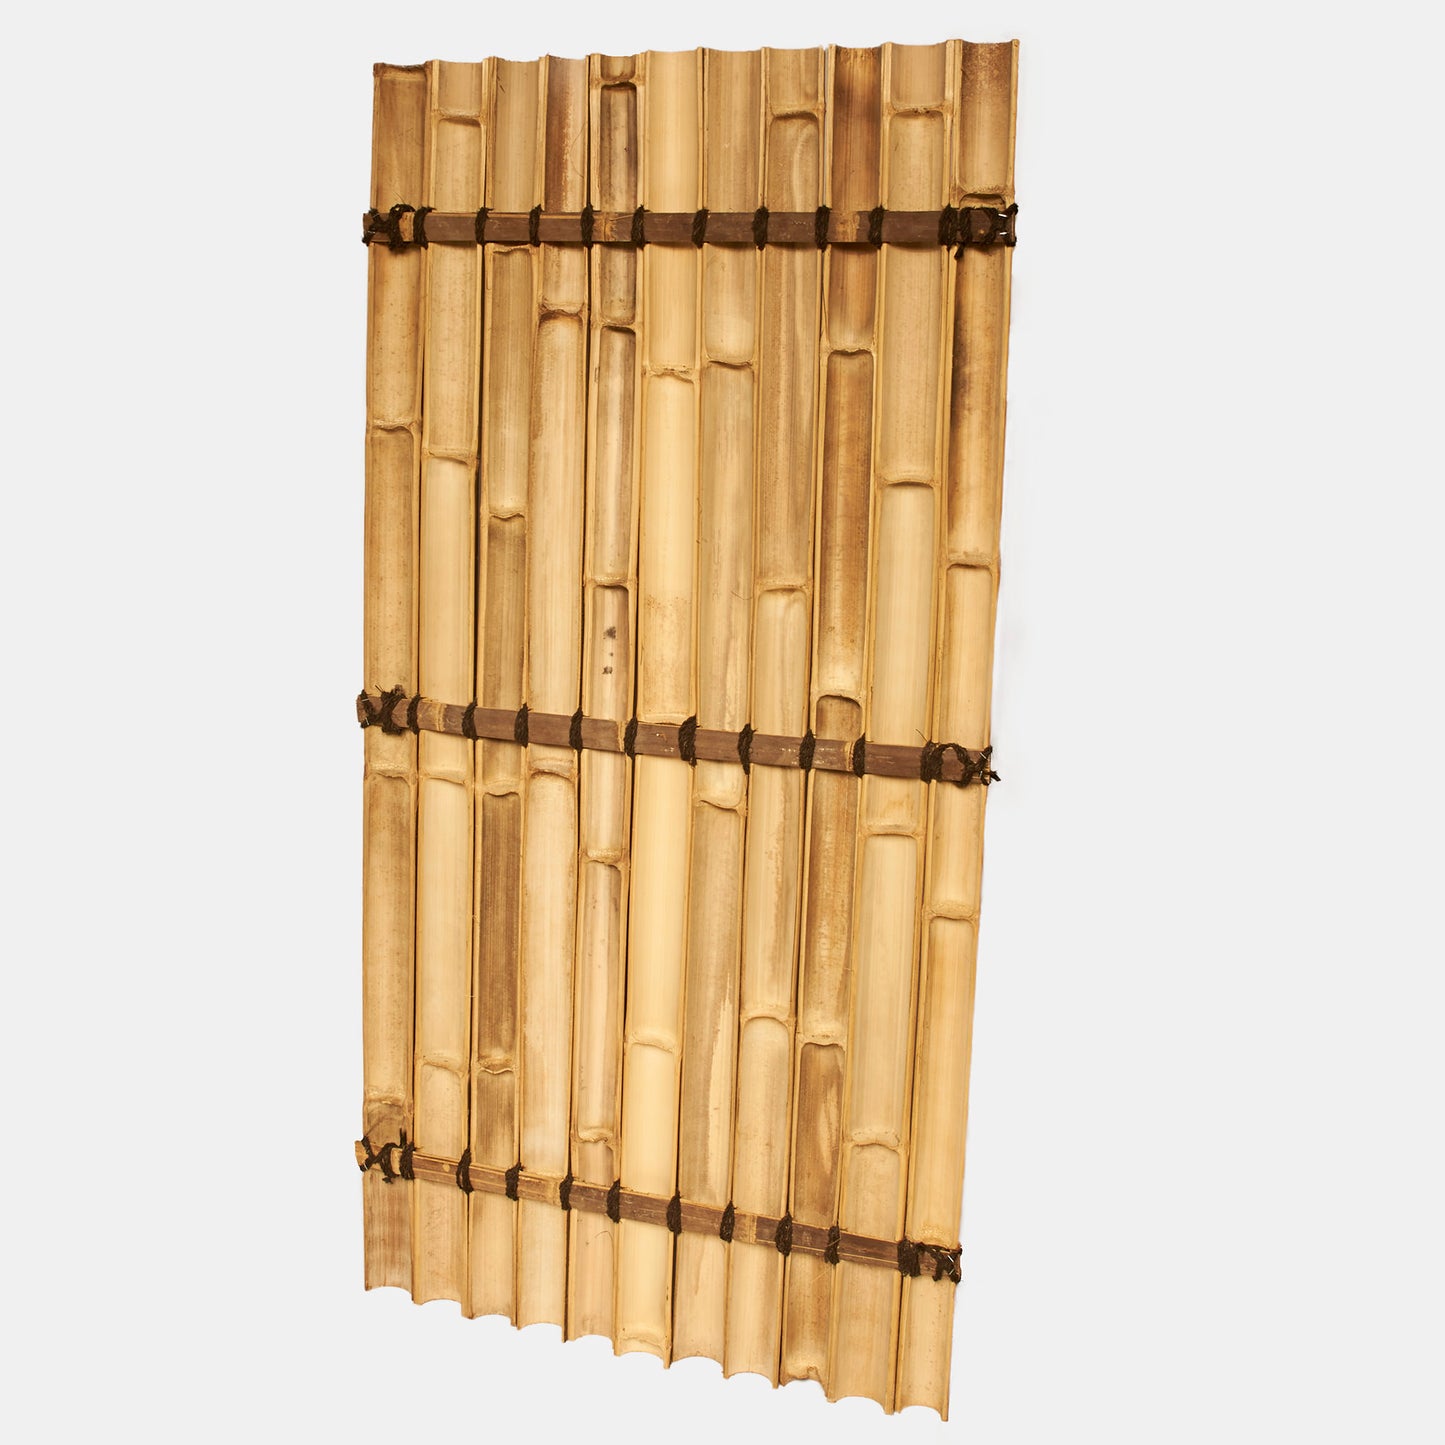 Sichtschutz oder Wandverkleidung aus halben braunen Bambusrohren mit Kokosschnürung als Dekoration - Produktfoto von hinten